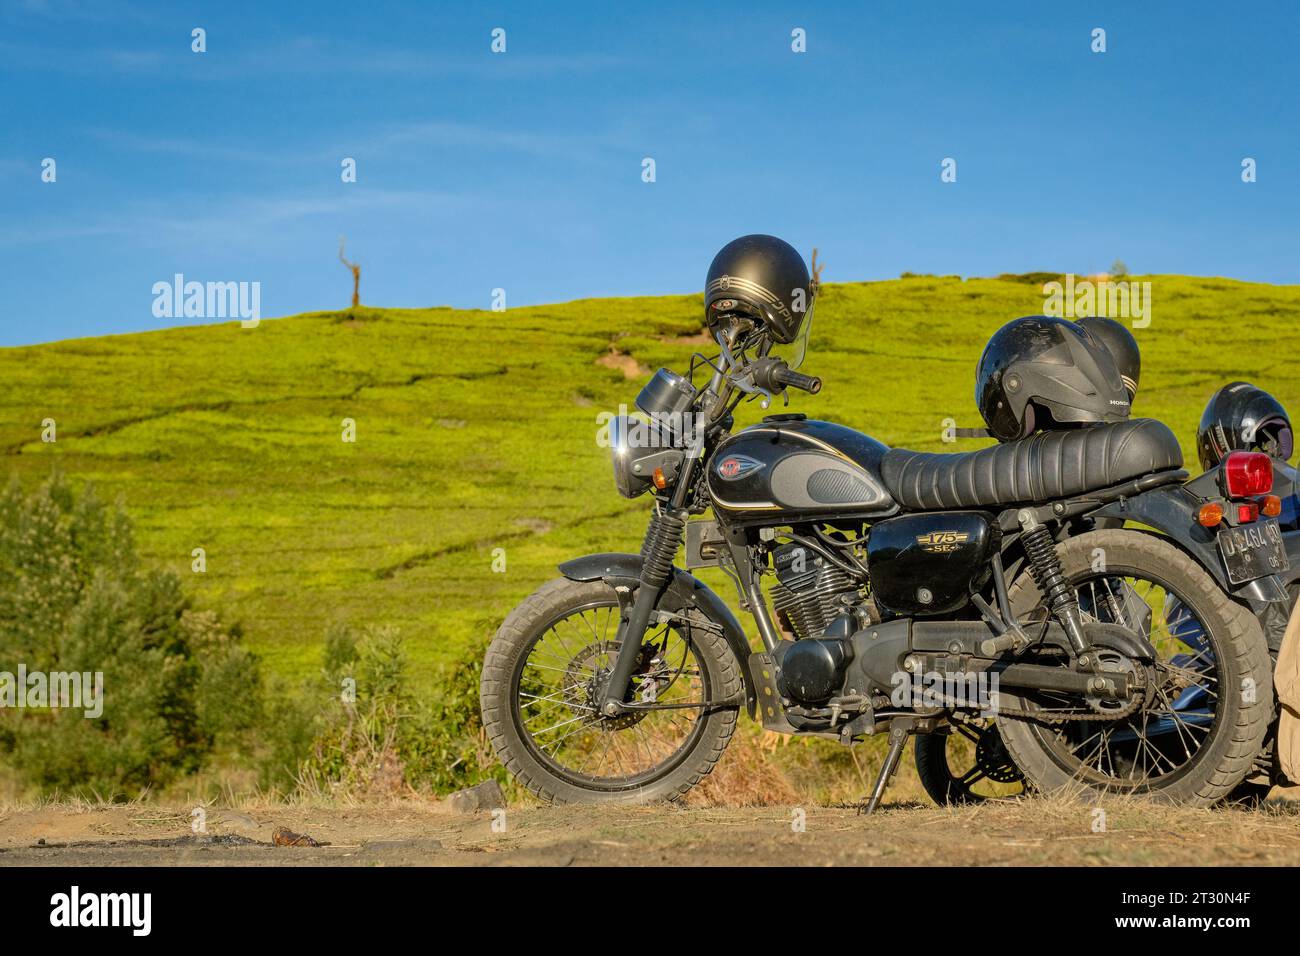 Ein markantes schwarzes Motorrad, das den üppigen indonesischen Reisfeldern gegenübersteht, fängt das Wesen einer Rocker-Reise inmitten der lebendigen Naturlandschaft ein. Stockfoto